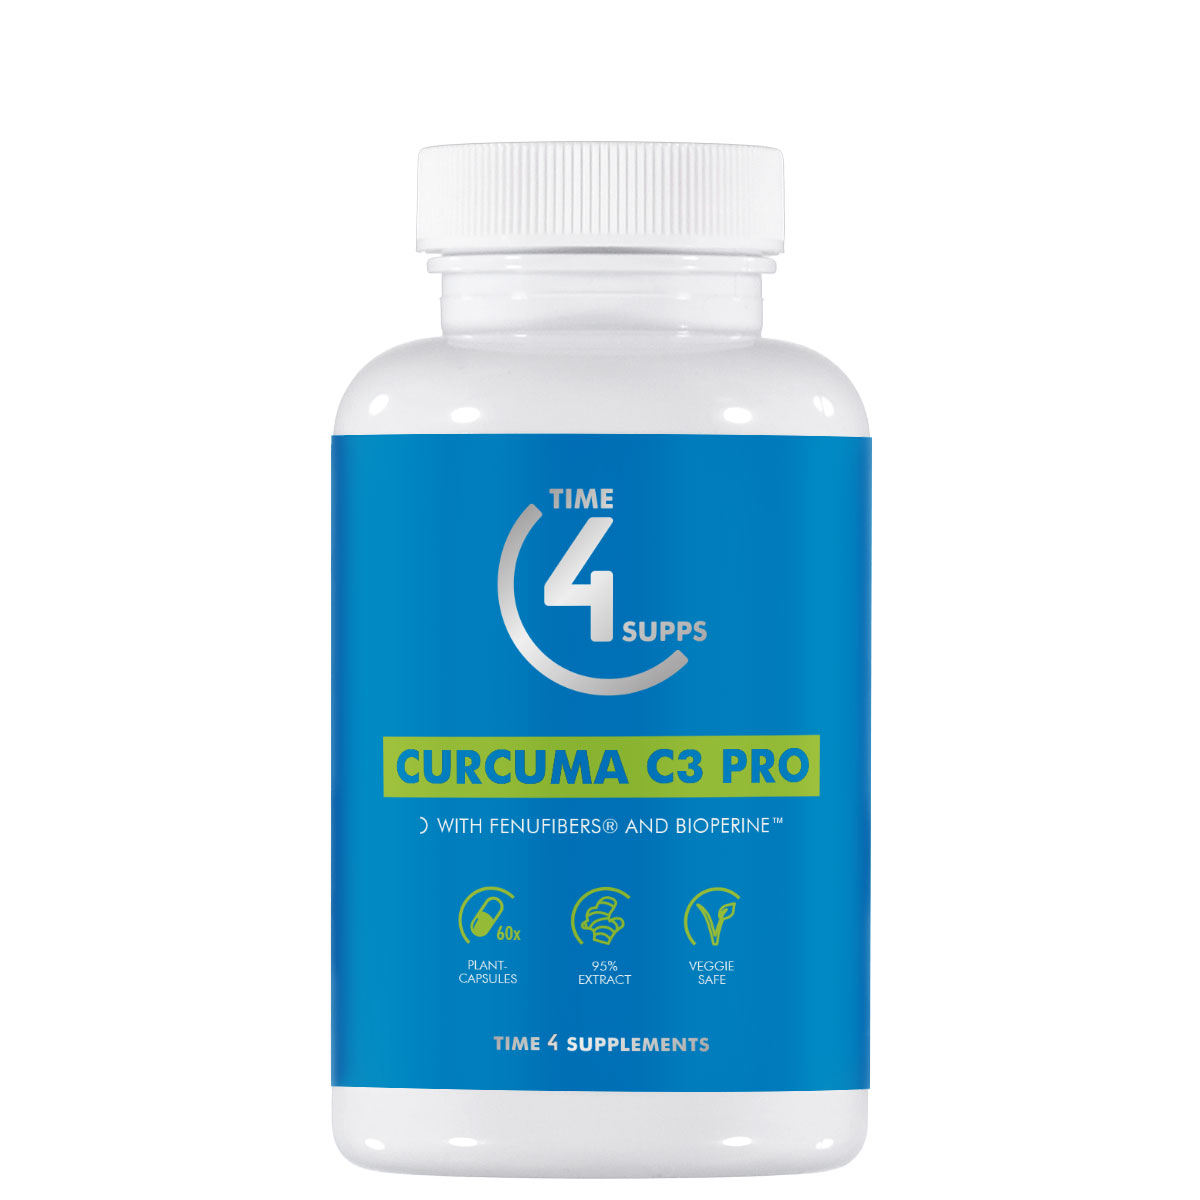 Curcuma C3 Pro